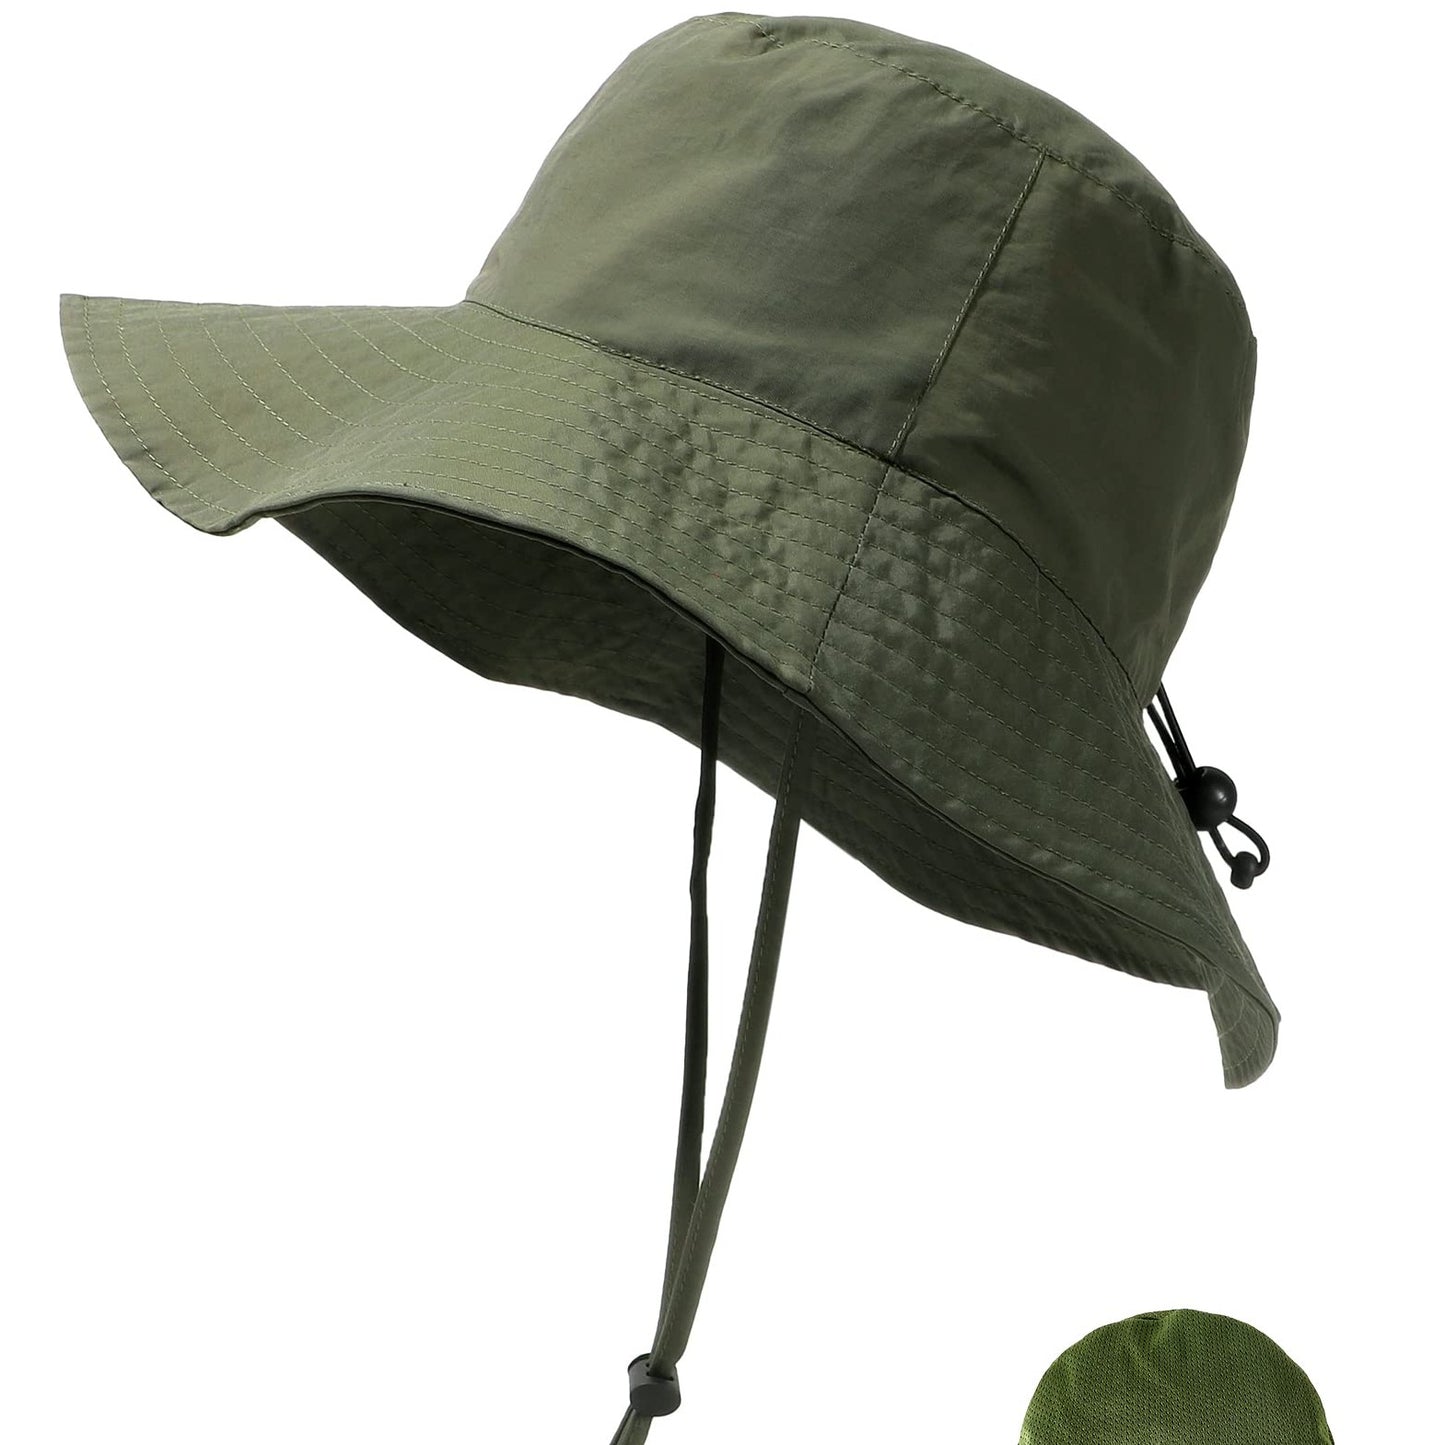 AMAKU Bucket Hats Cotton Packable UV Protection Sun Hats Summer Beach Hats  for Women